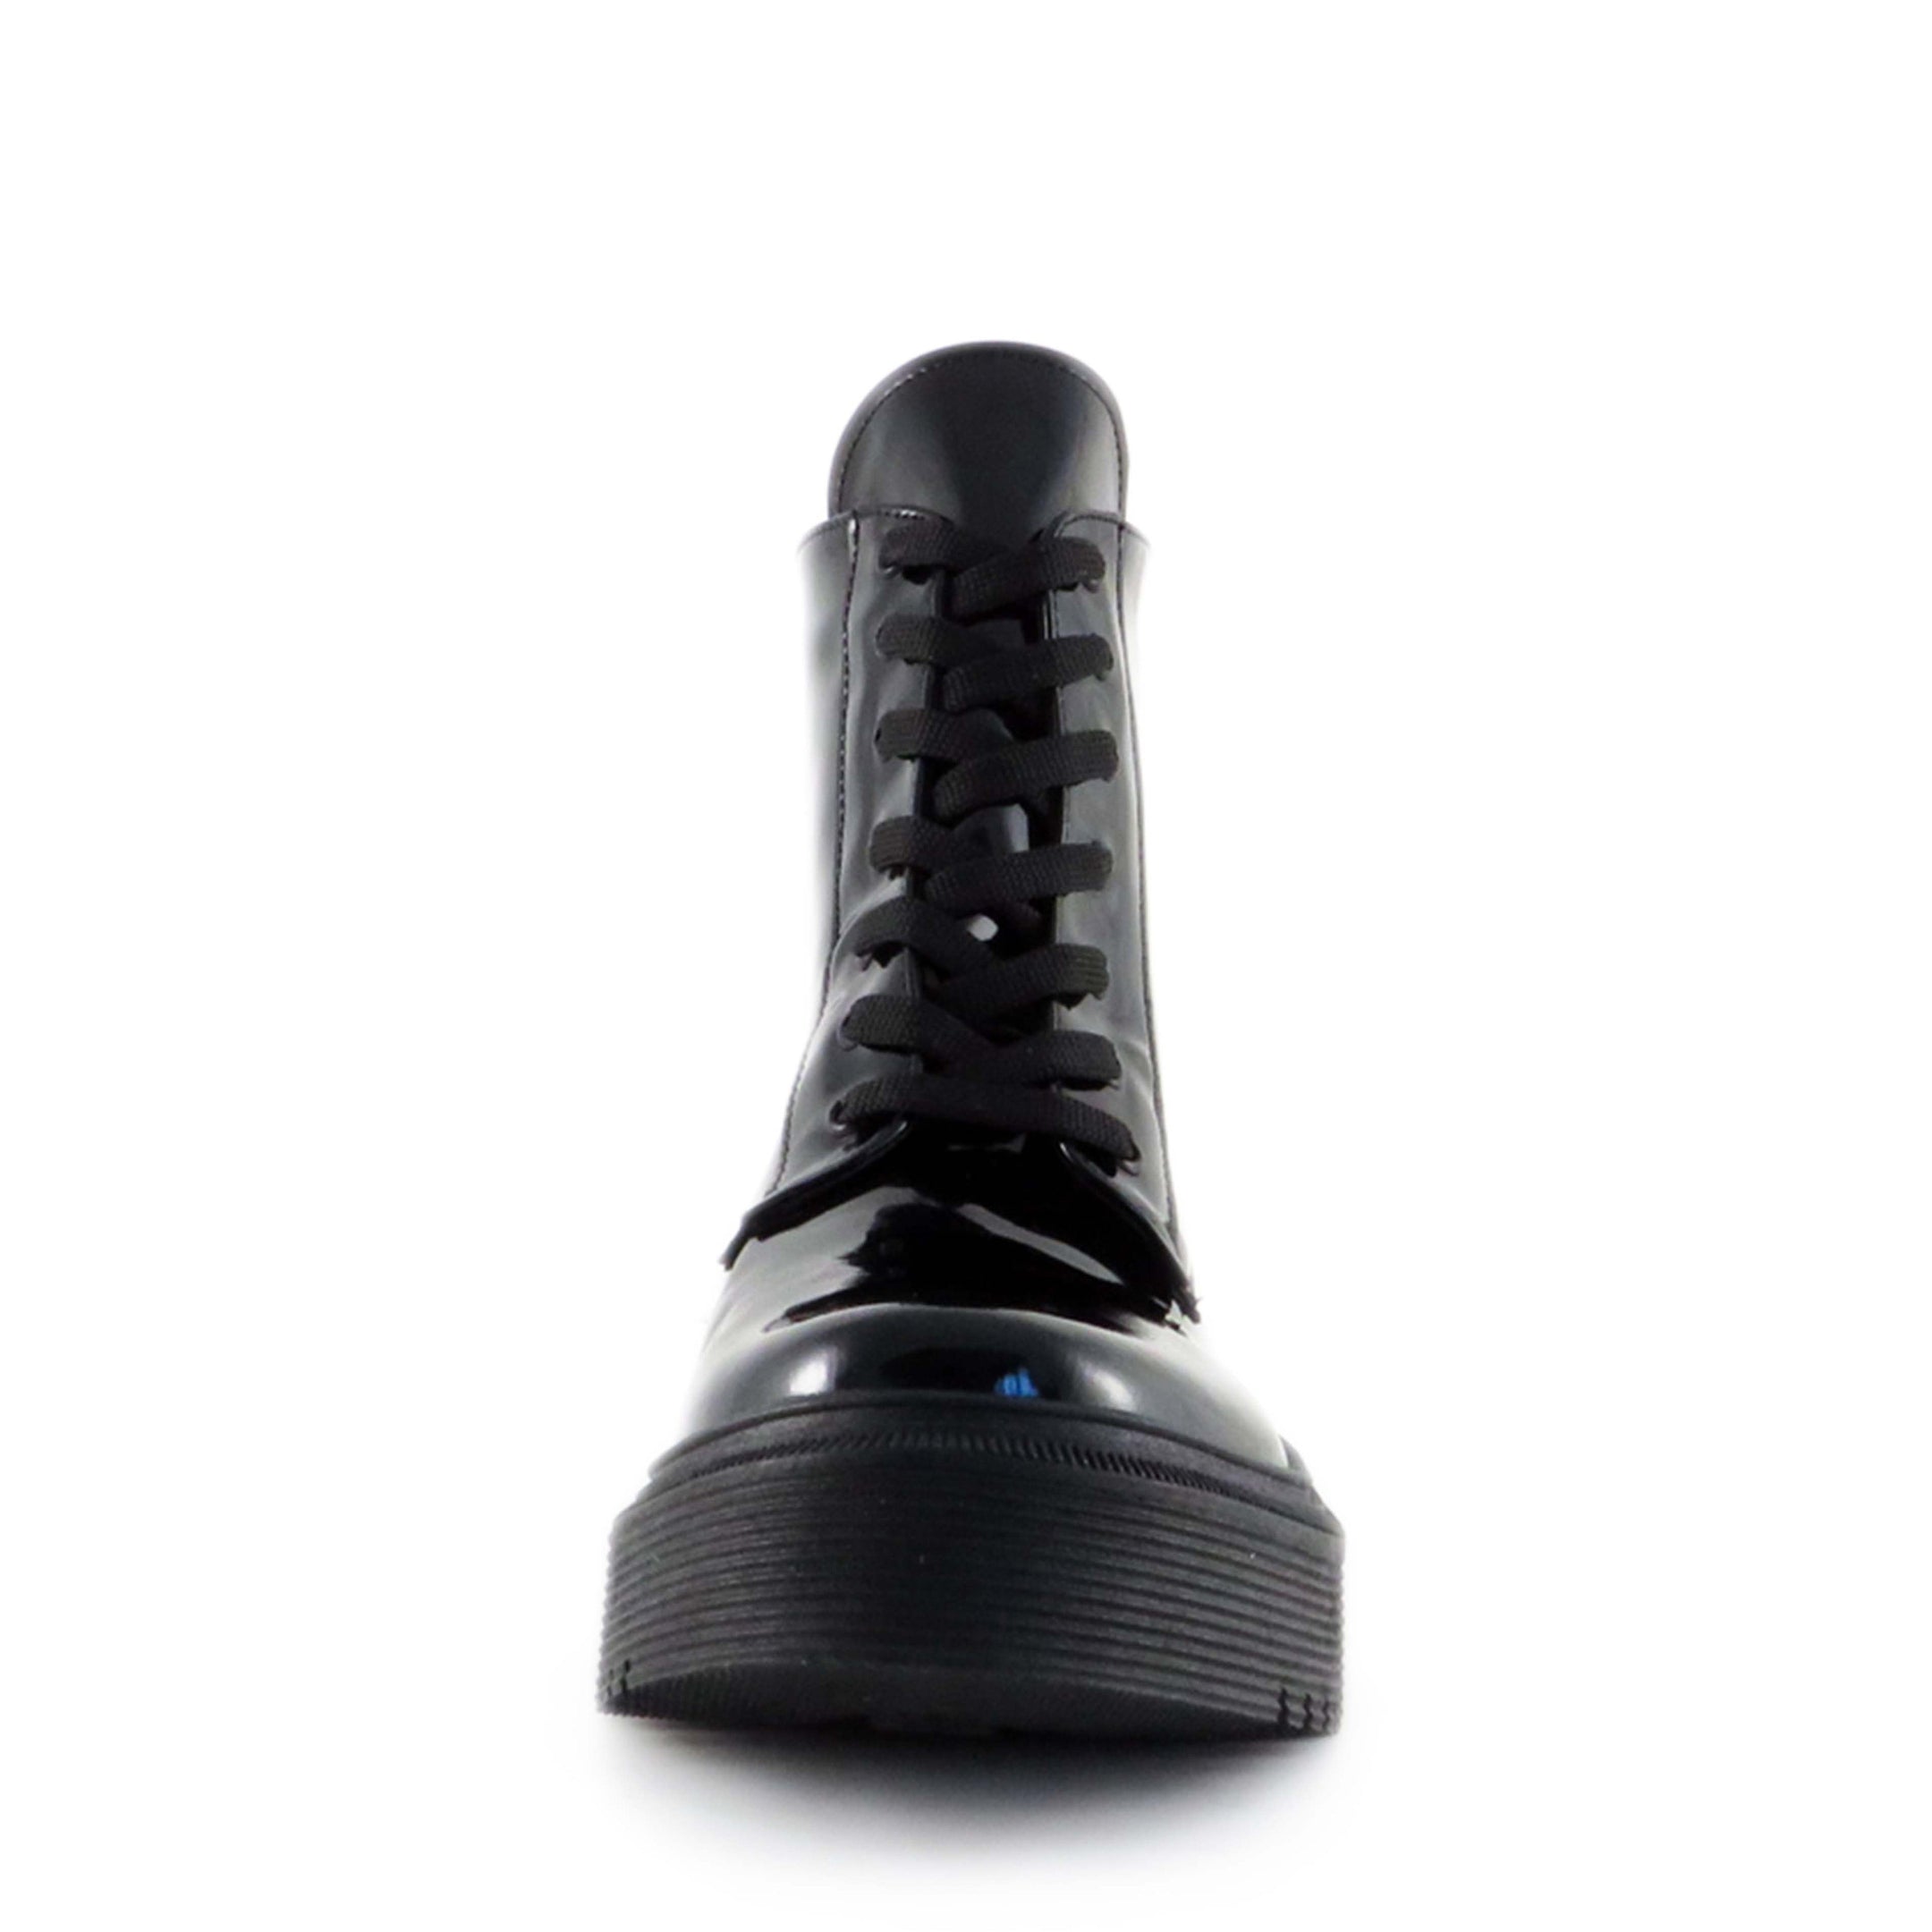 Buy Women's Lunar Combat Boots Patent Black by Nest Shoes